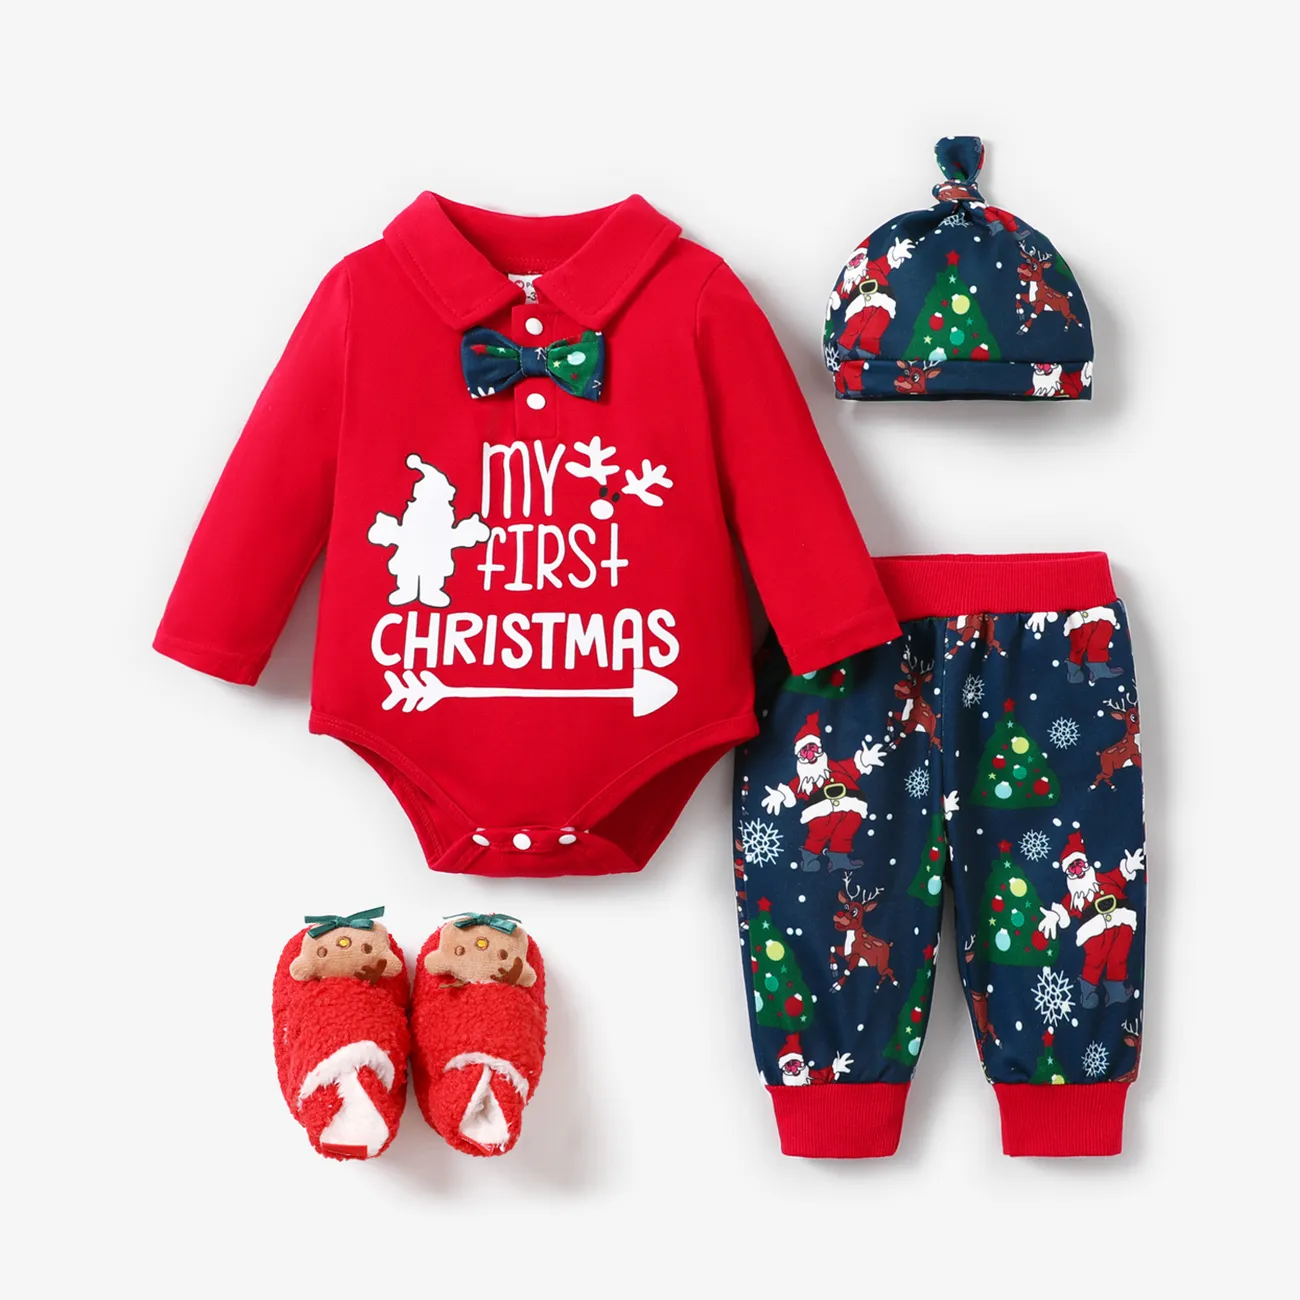 聖誕節 3件 嬰兒 男 POLO領 童趣 長袖 嬰兒套裝 紅色 big image 1